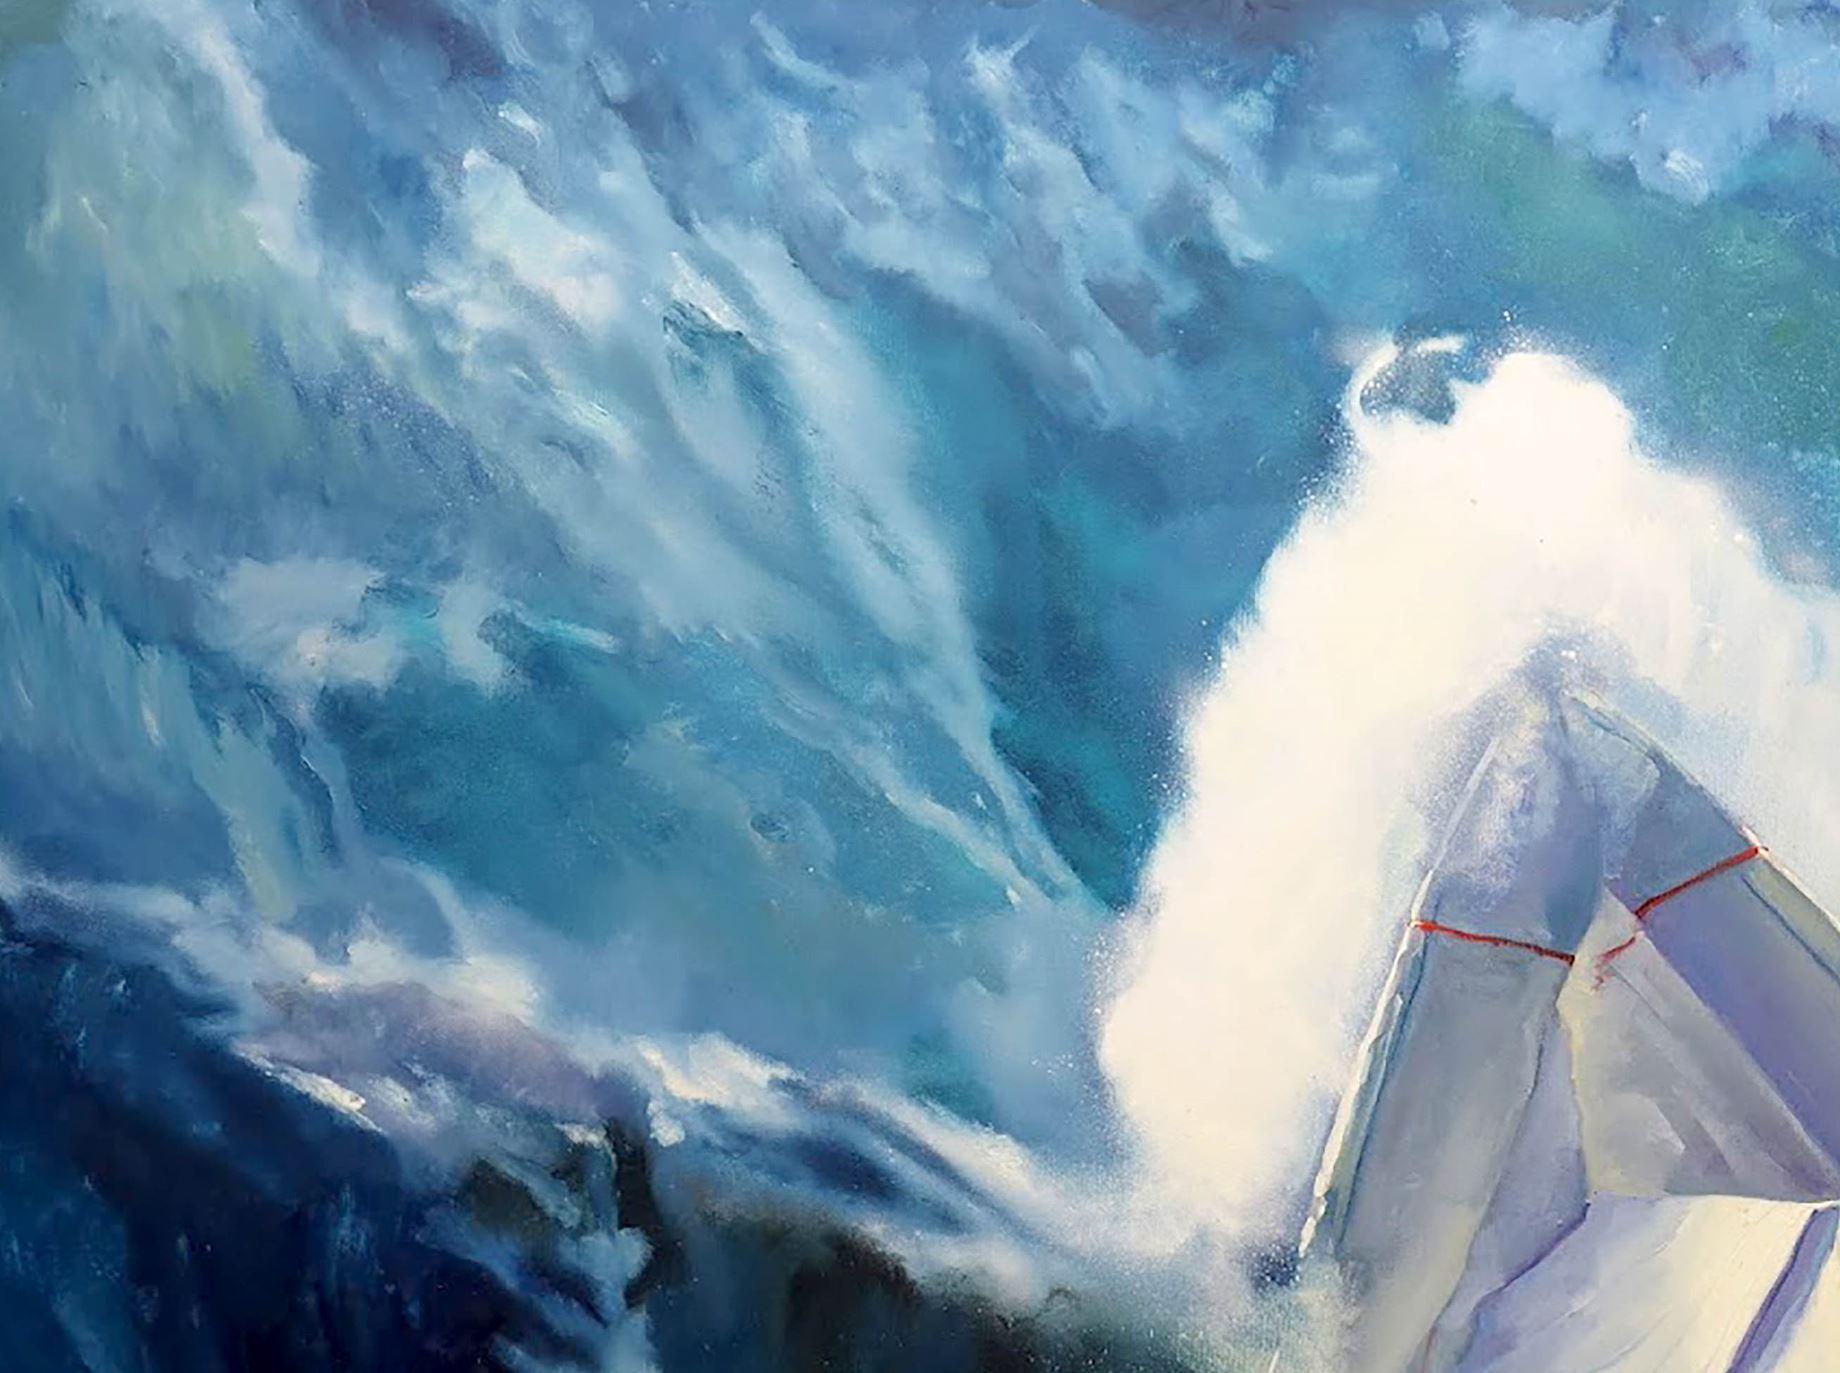 Künstler: Warwarow Anatoli Viktorowitsch
Titel: Sturm,
Größe: 53x69 Zoll, (135x175 cm)
Medium: Öl auf Leinwand
Handbemalt, original, einzigartig.

Wenn Sie auf der Suche nach einem Kunstwerk sind, das Ihr Zuhause aufregender und dramatischer macht,